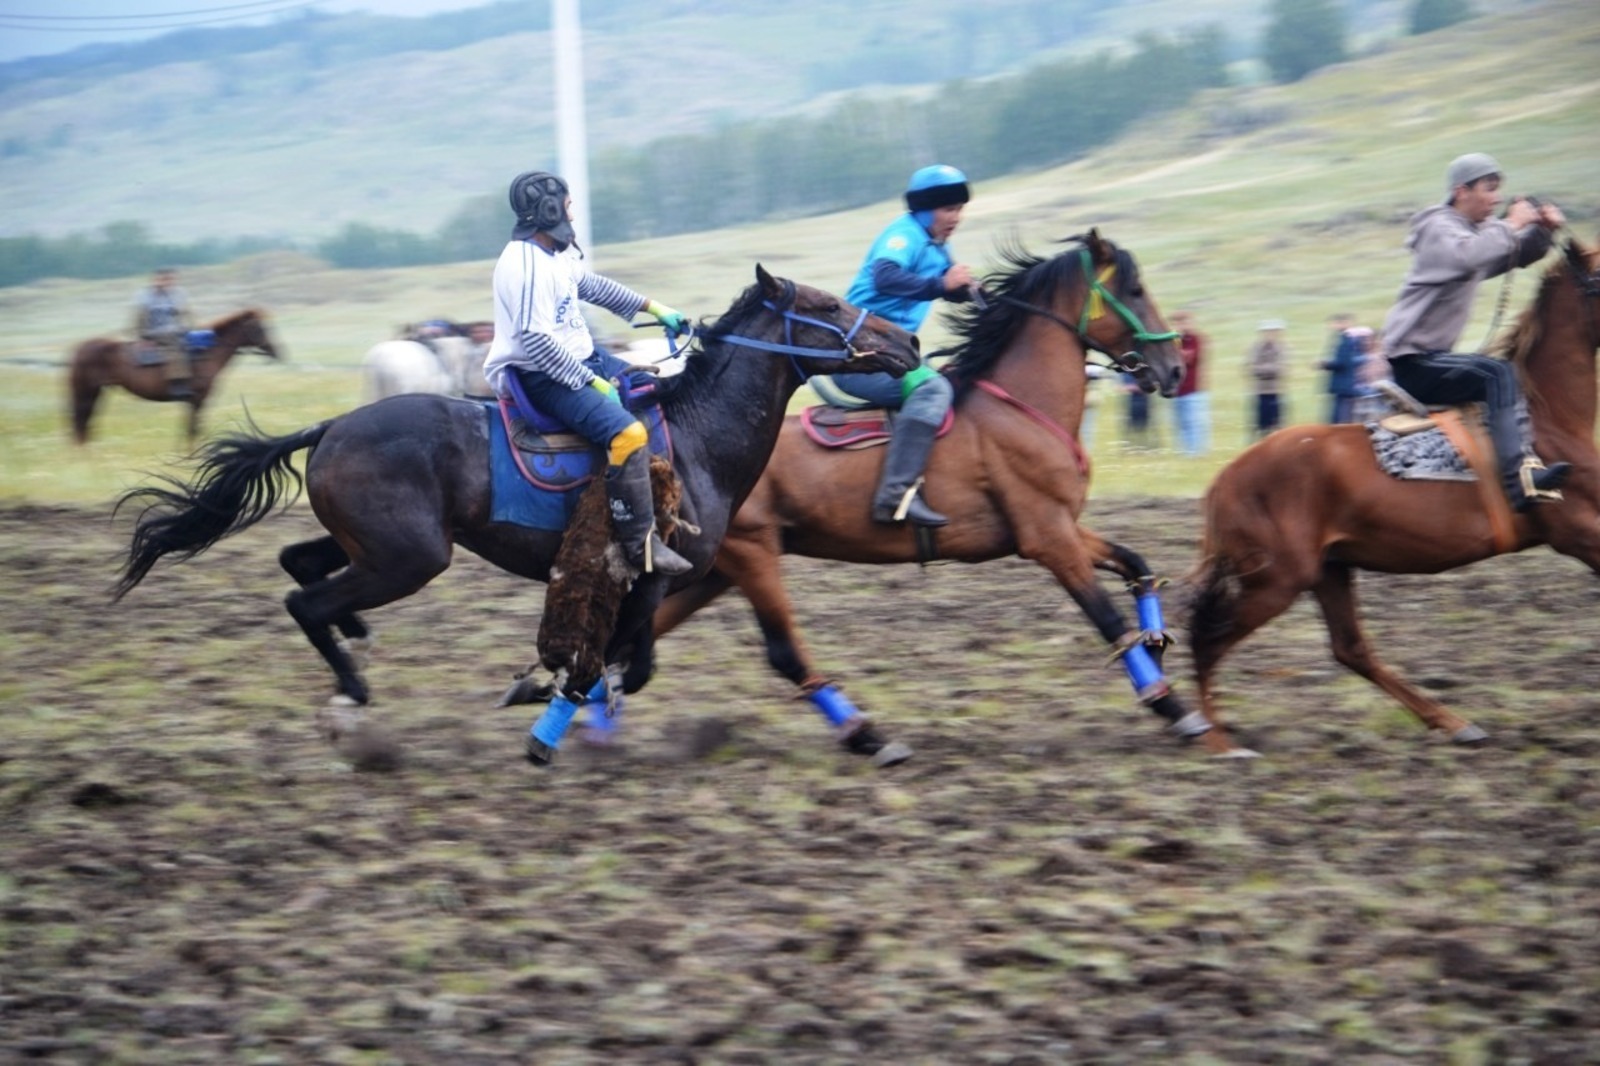 Козлодрание: фестиваль башкирской лошади начался с национальной игры кочевников